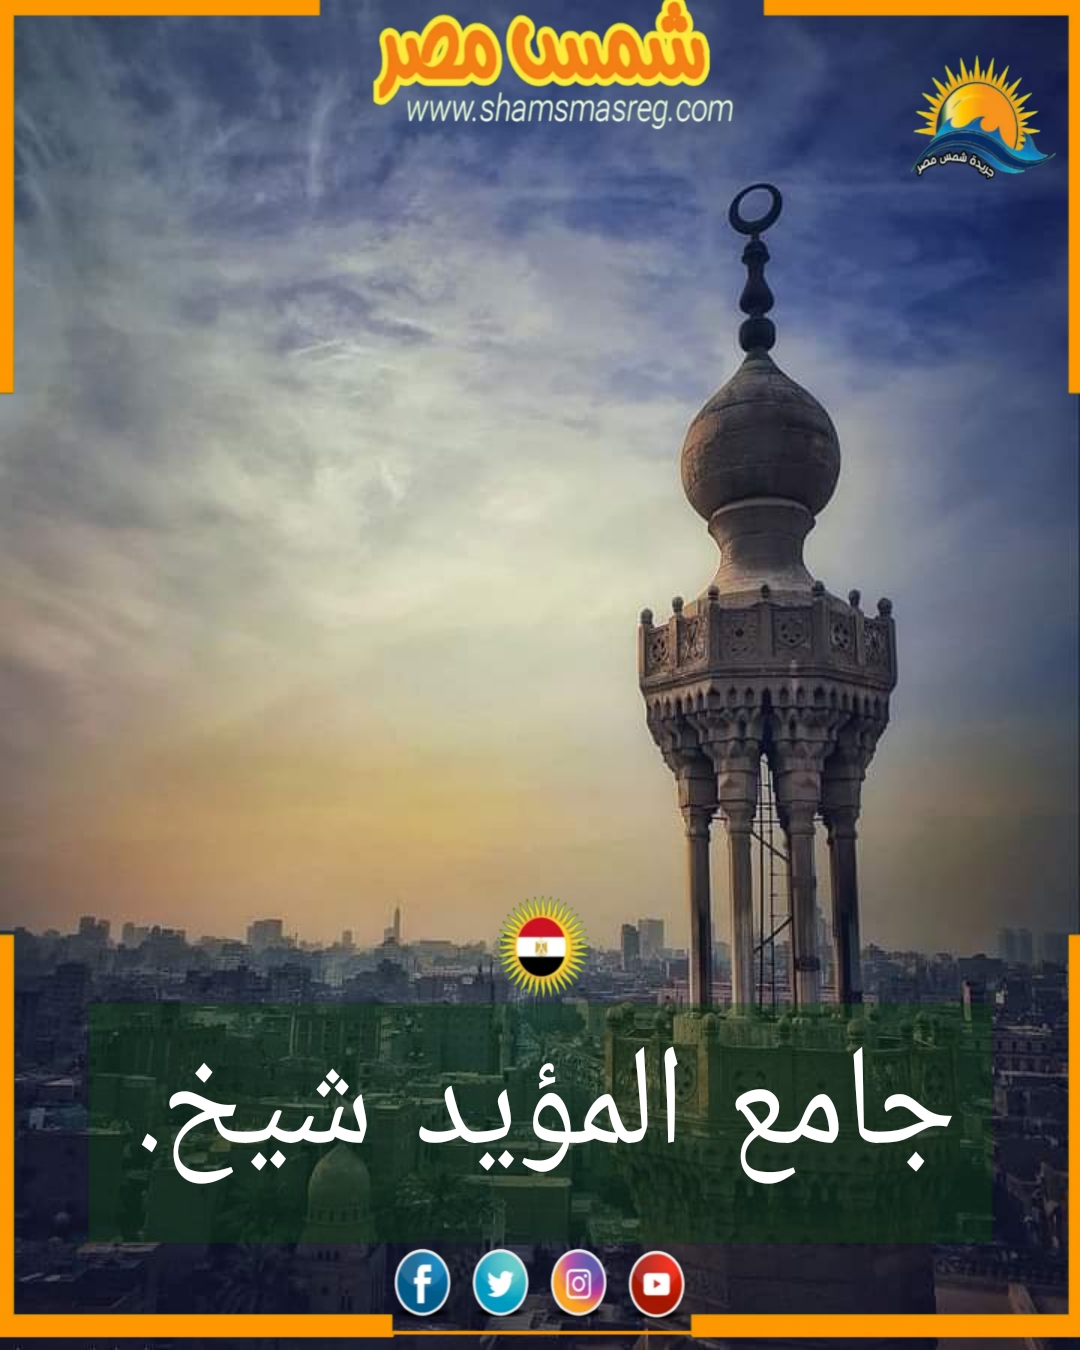 شمس مصر/ جامع المؤيد شيخ .